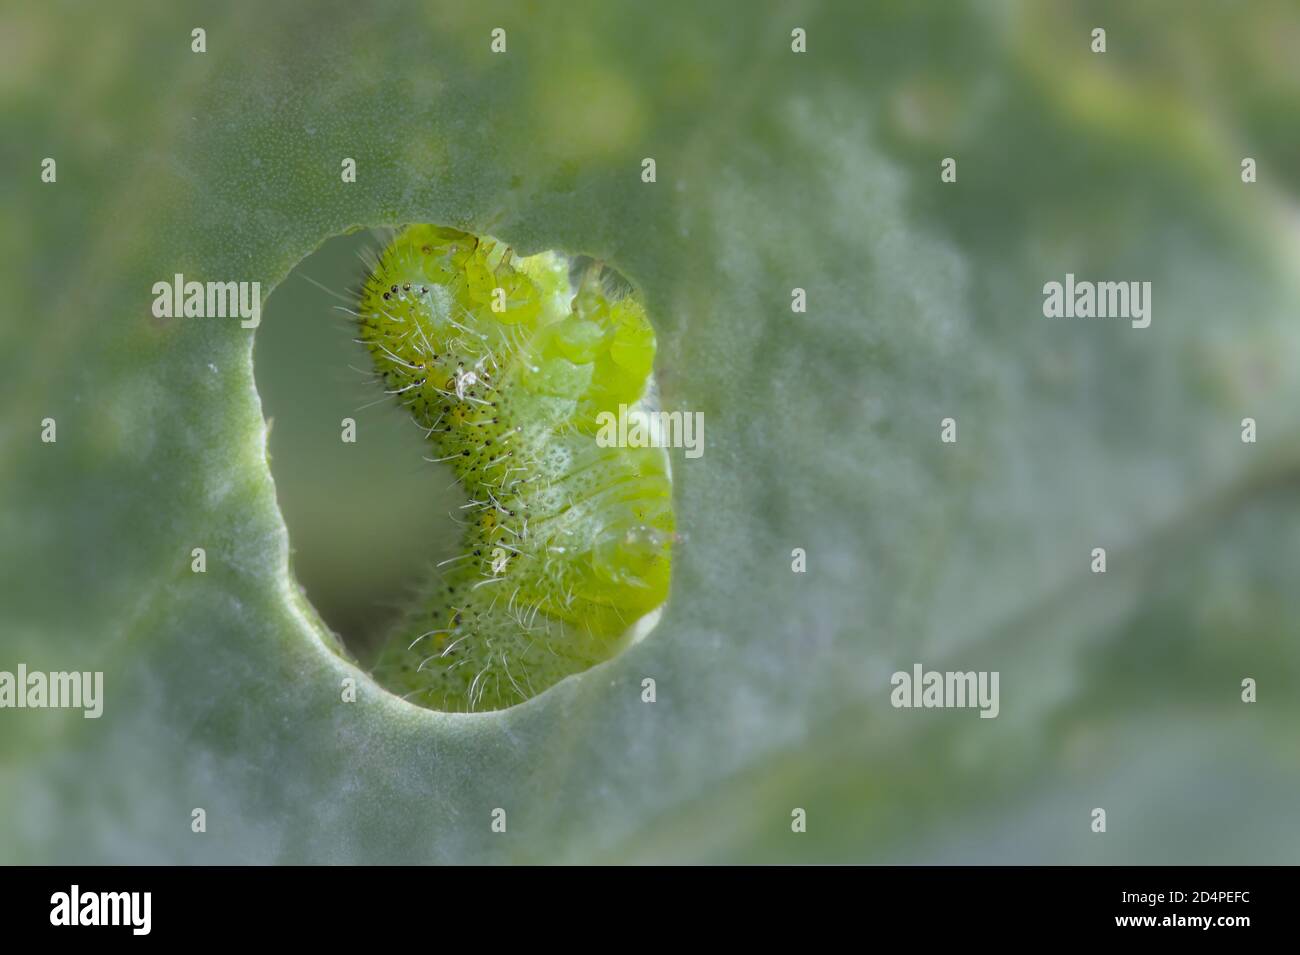 Makro eines kleinen weißen Schmetterlings Caterpillar, Pieris rapae, Essen EIN Kohlblatt durch EIN Loch im Blatt betrachtet. VEREINIGTES KÖNIGREICH Stockfoto